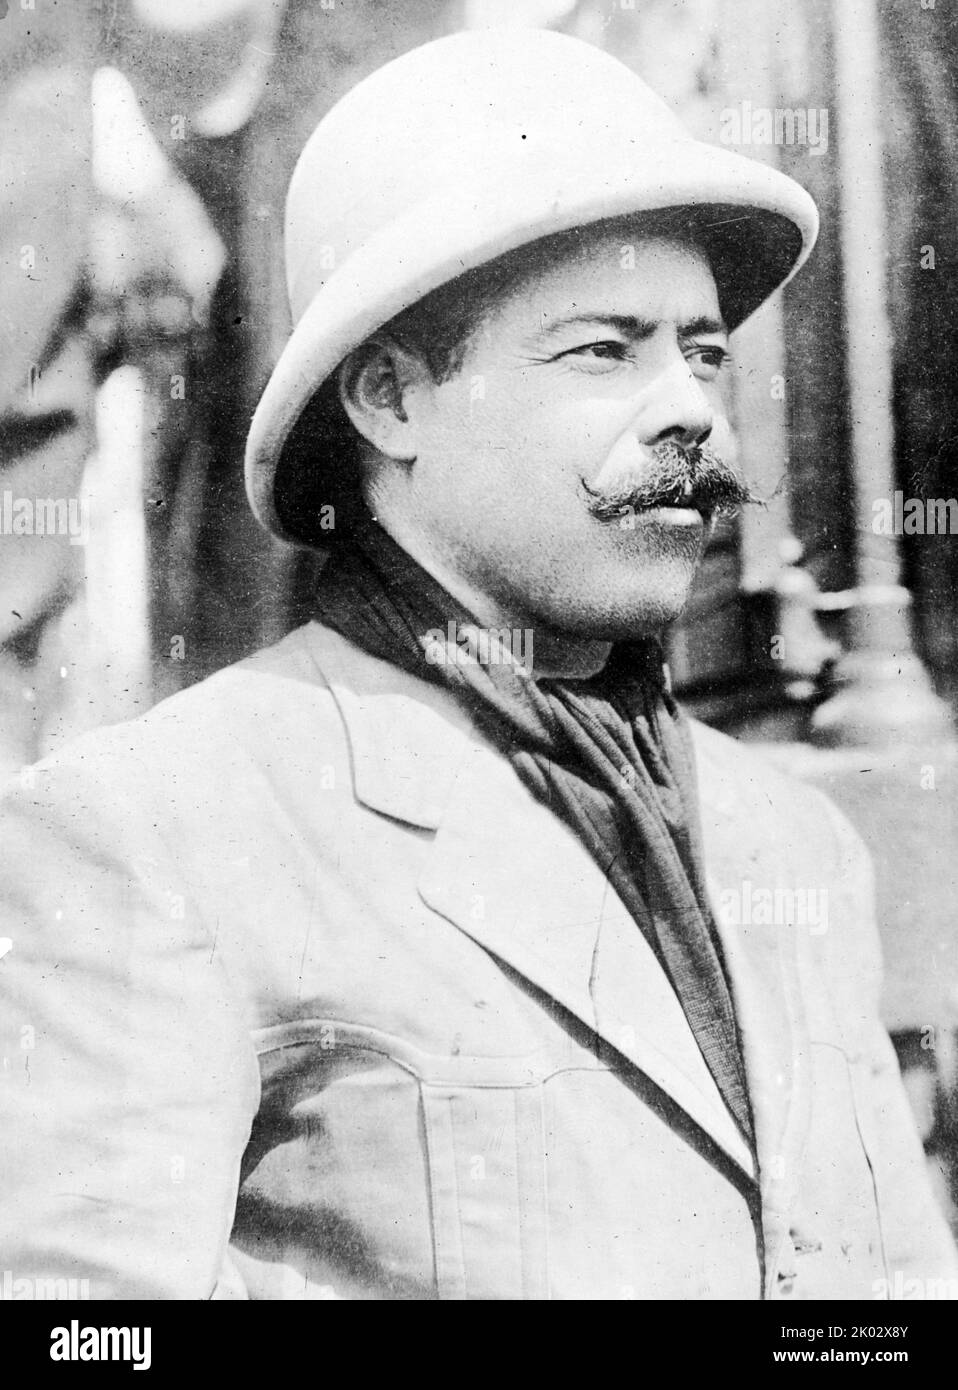 Francisco 'Pancho' Villa (1878 - 1923) le général révolutionnaire mexicain et l'une des figures les plus importantes de la Révolution mexicaine. Banque D'Images